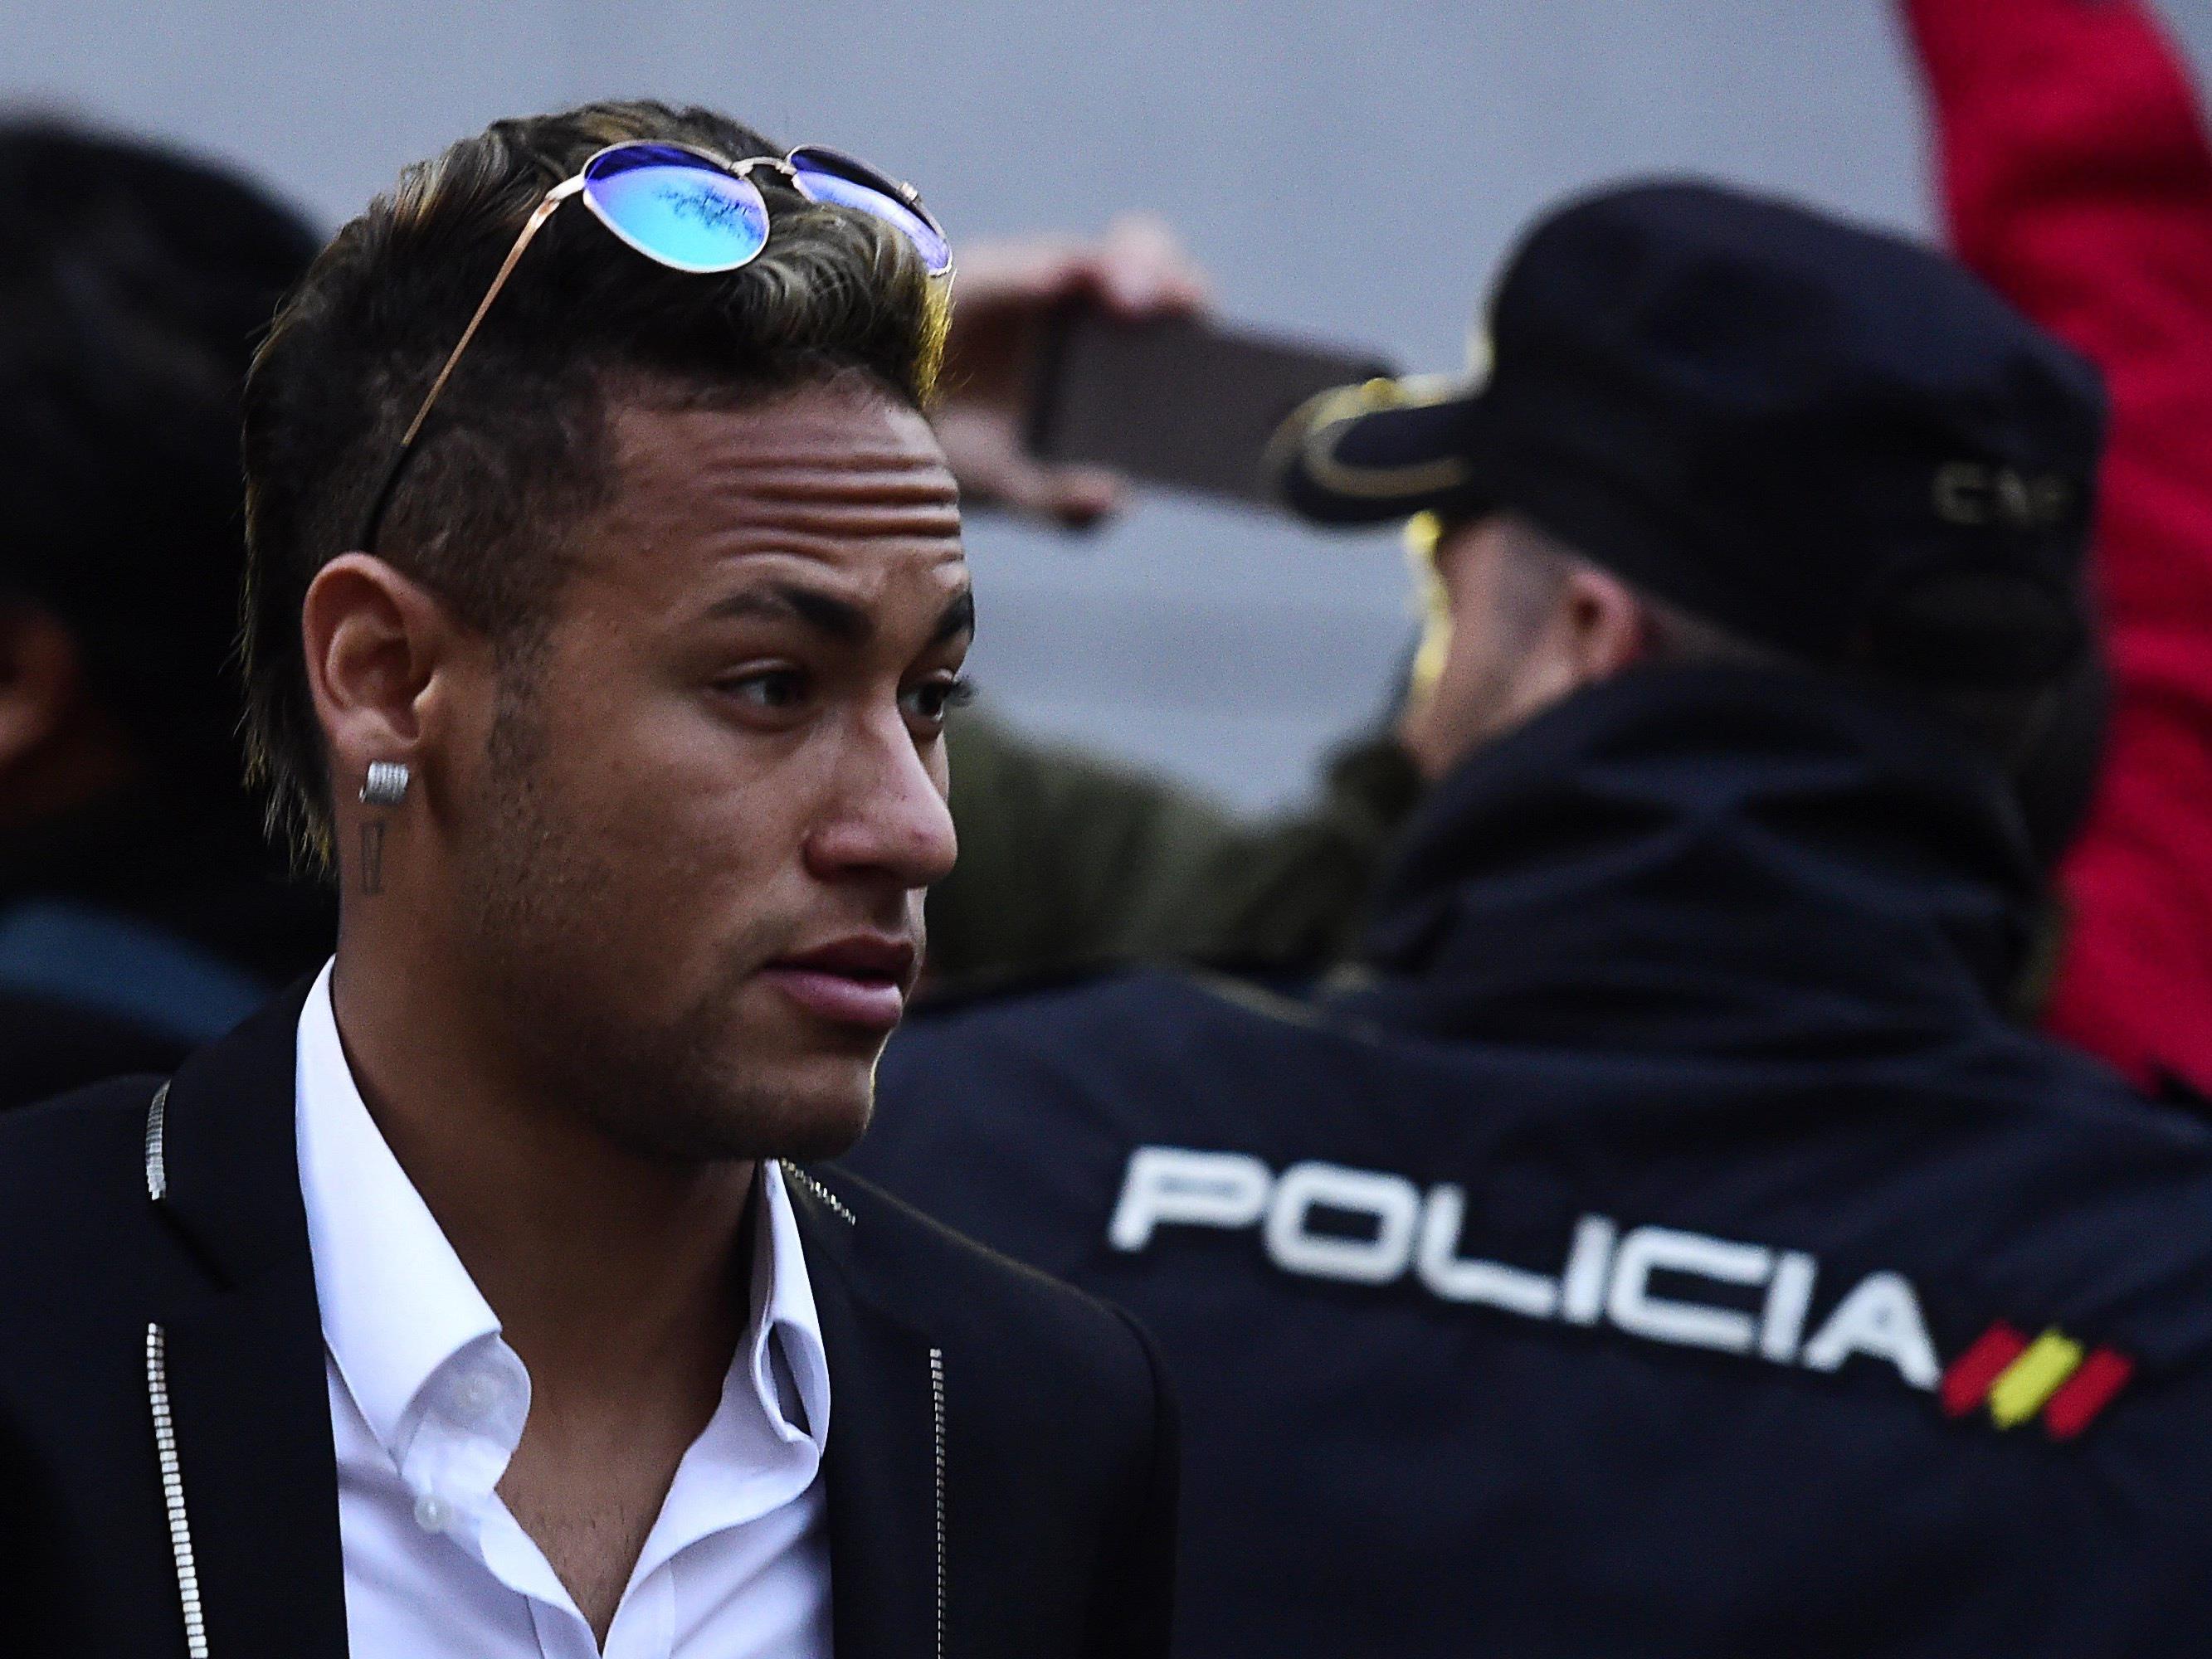 Brasiliens Justiz friert Vermögen von Barca-Star Neymar ein